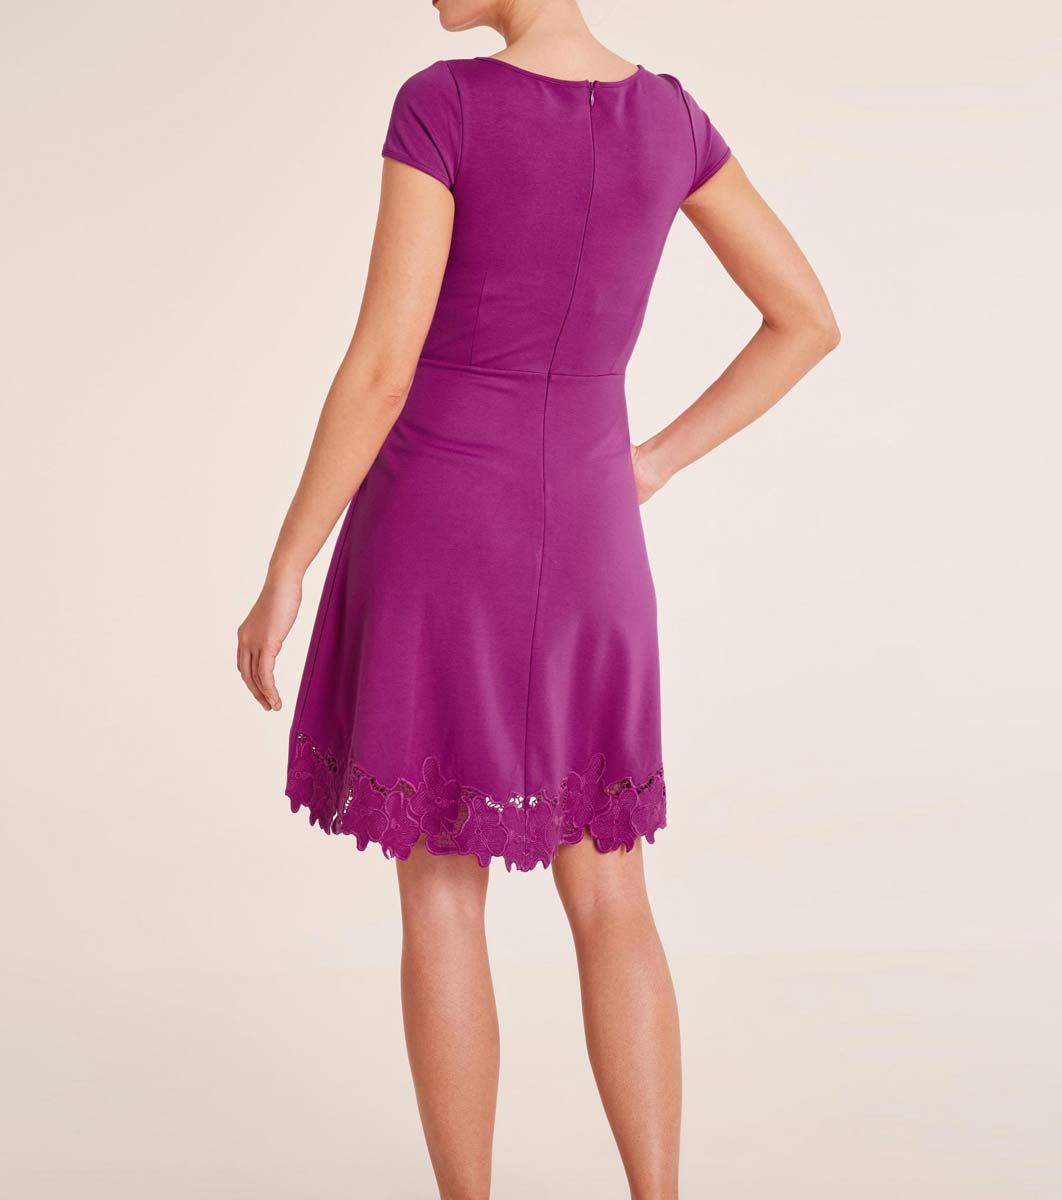 Ashley Brooke Damen Designer-Kleid mit Stickerei, pink